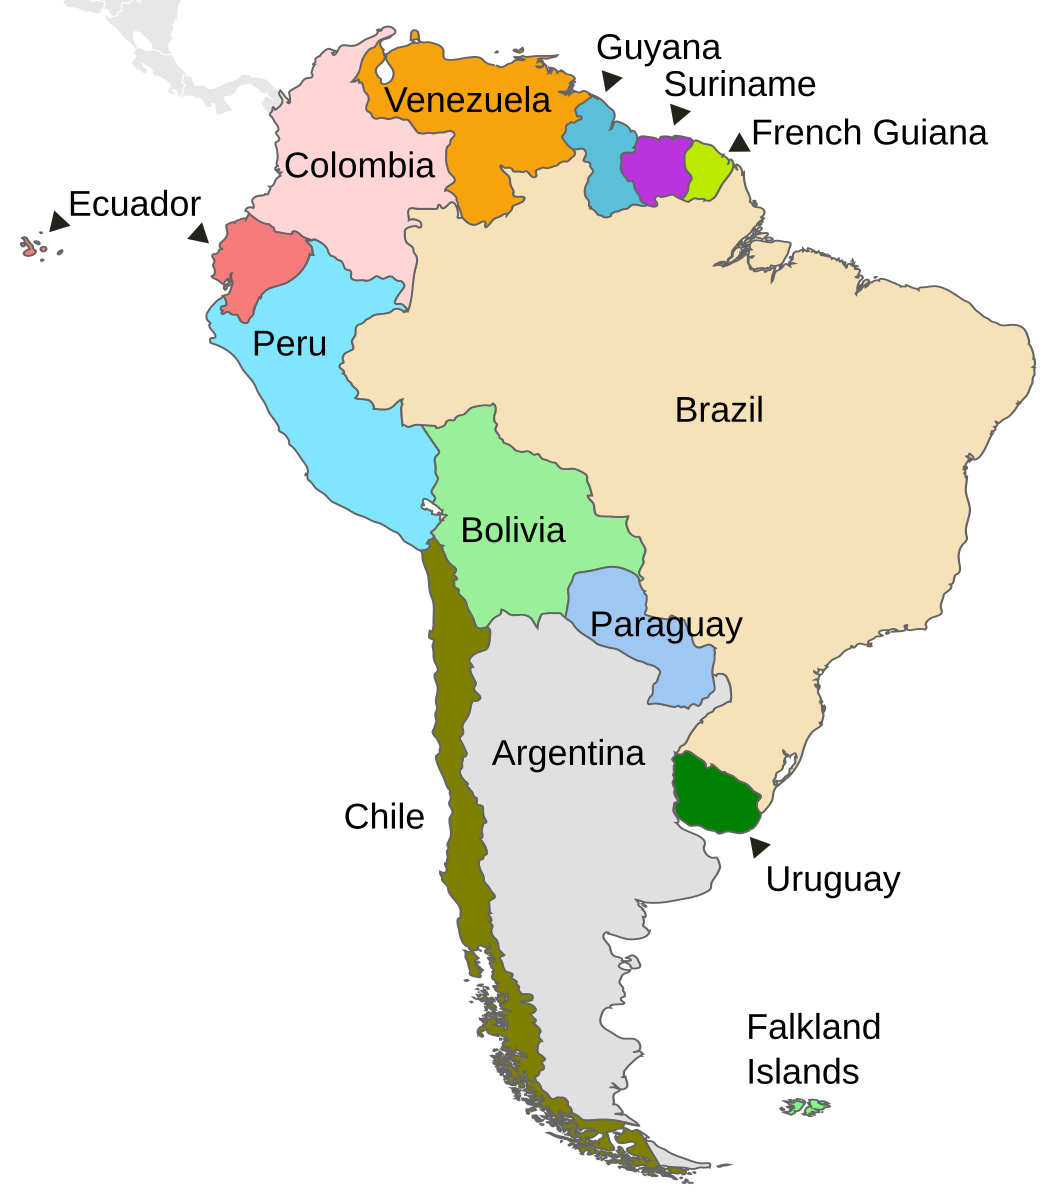 South american country. Страна Бразилия на карте Южной Америки. Бразилия на карте Южной Америки. Карта Южной Америки со странами. Государства Южной Америки на карте.